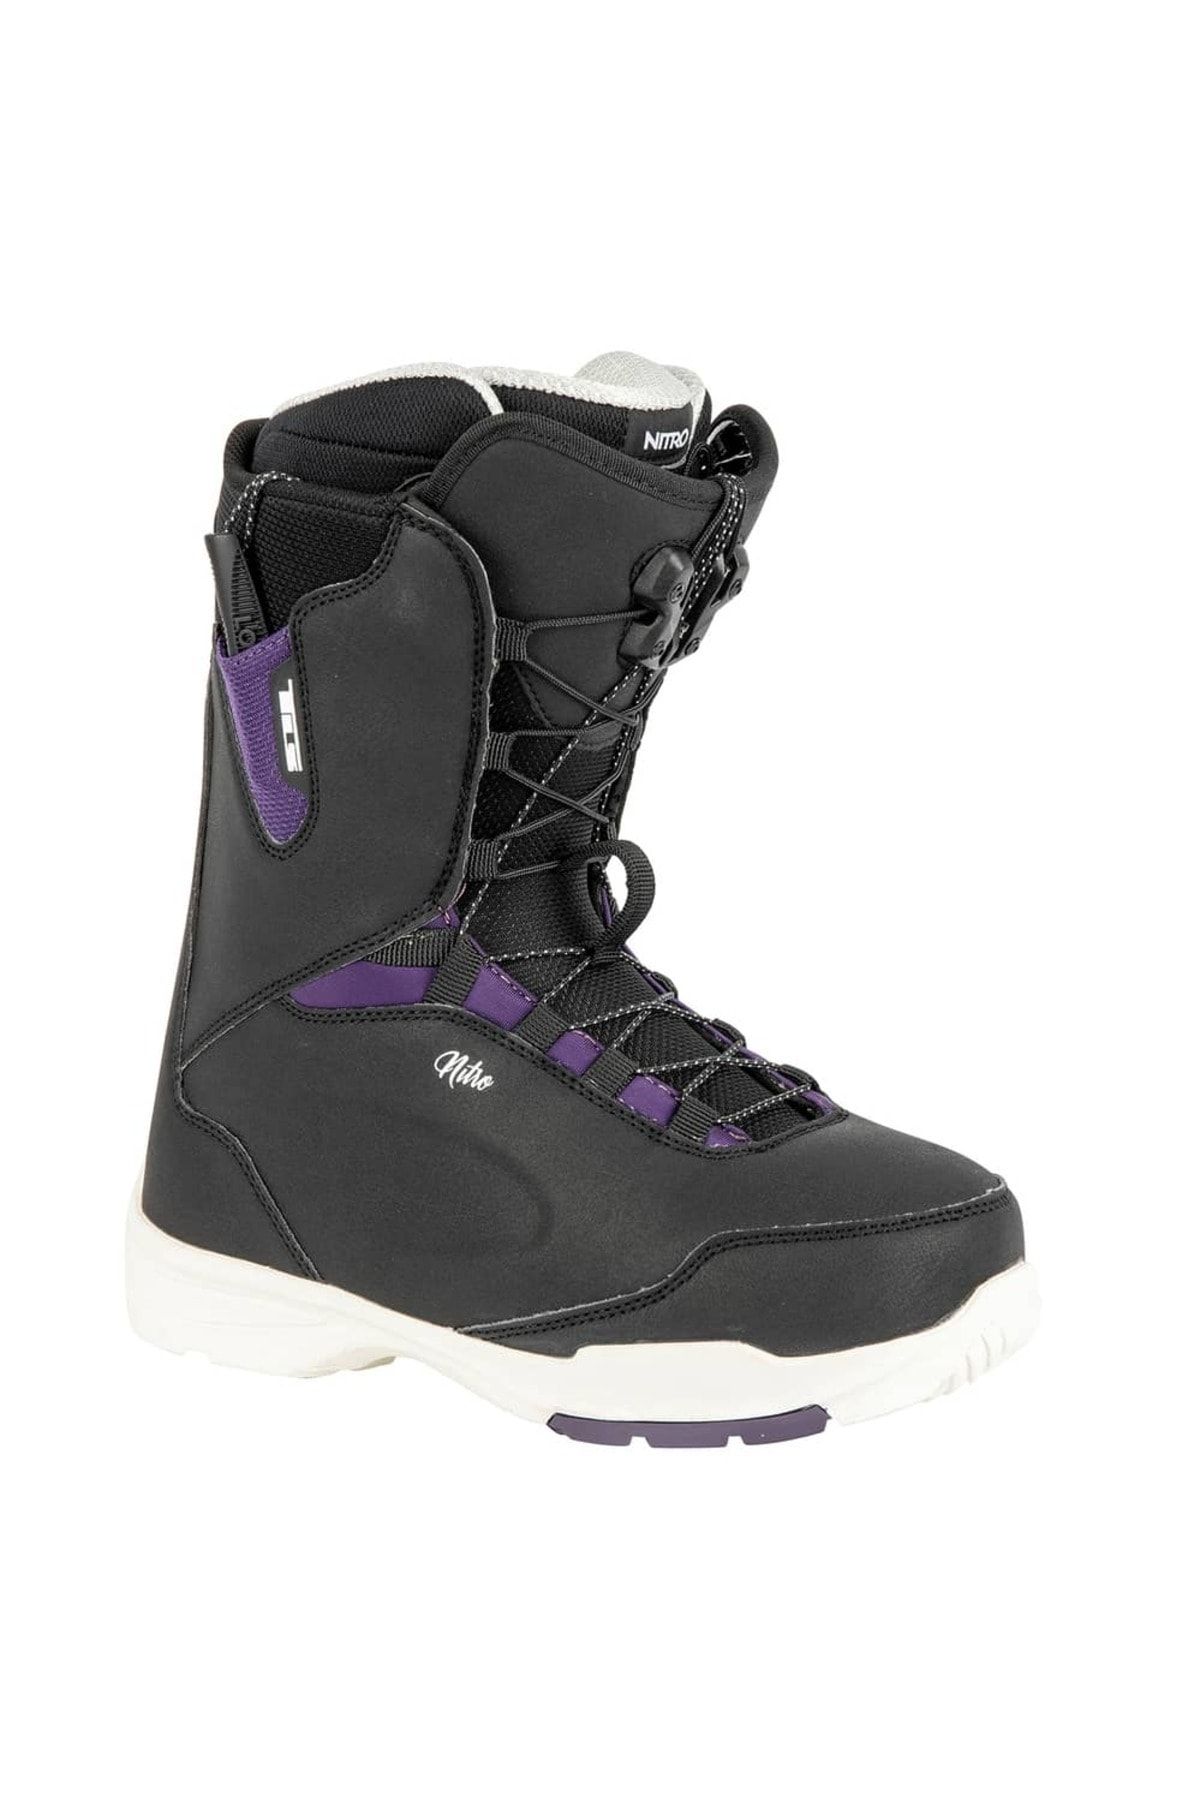 Nitro Snowboards Nıtro Scala Tls Black-purple